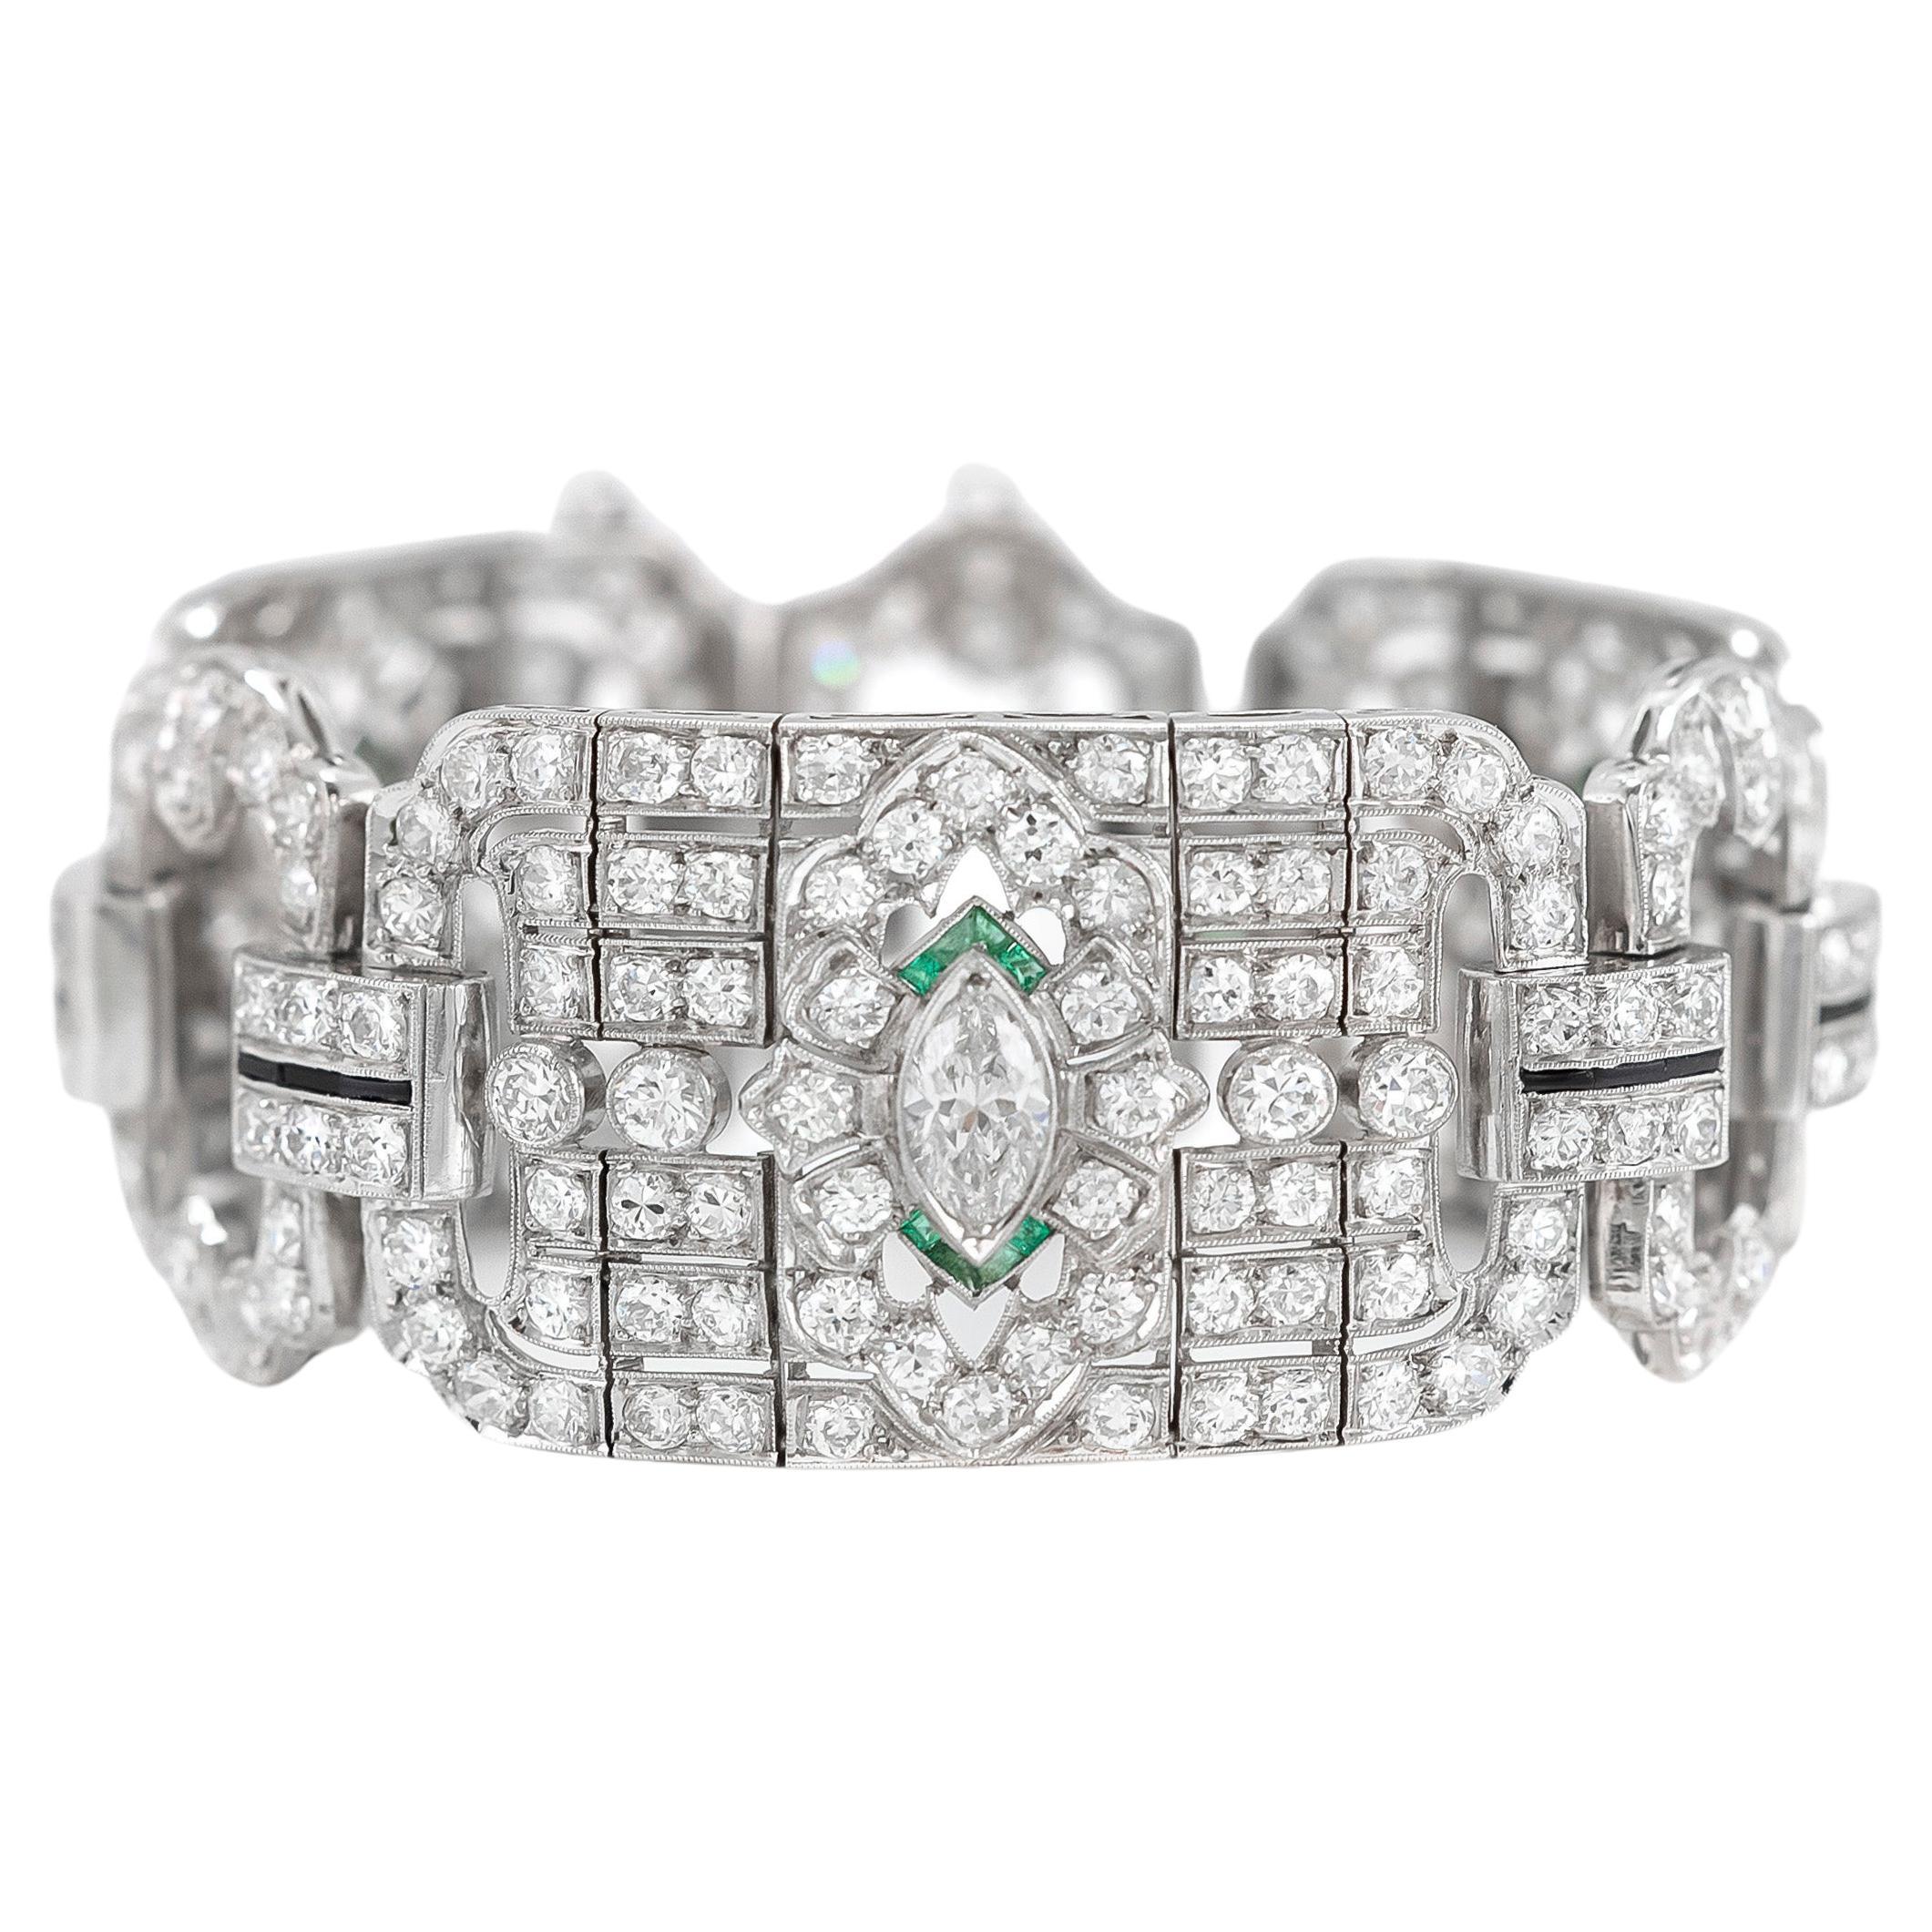 Art Deco 22.00 Carat Diamond Bracelet